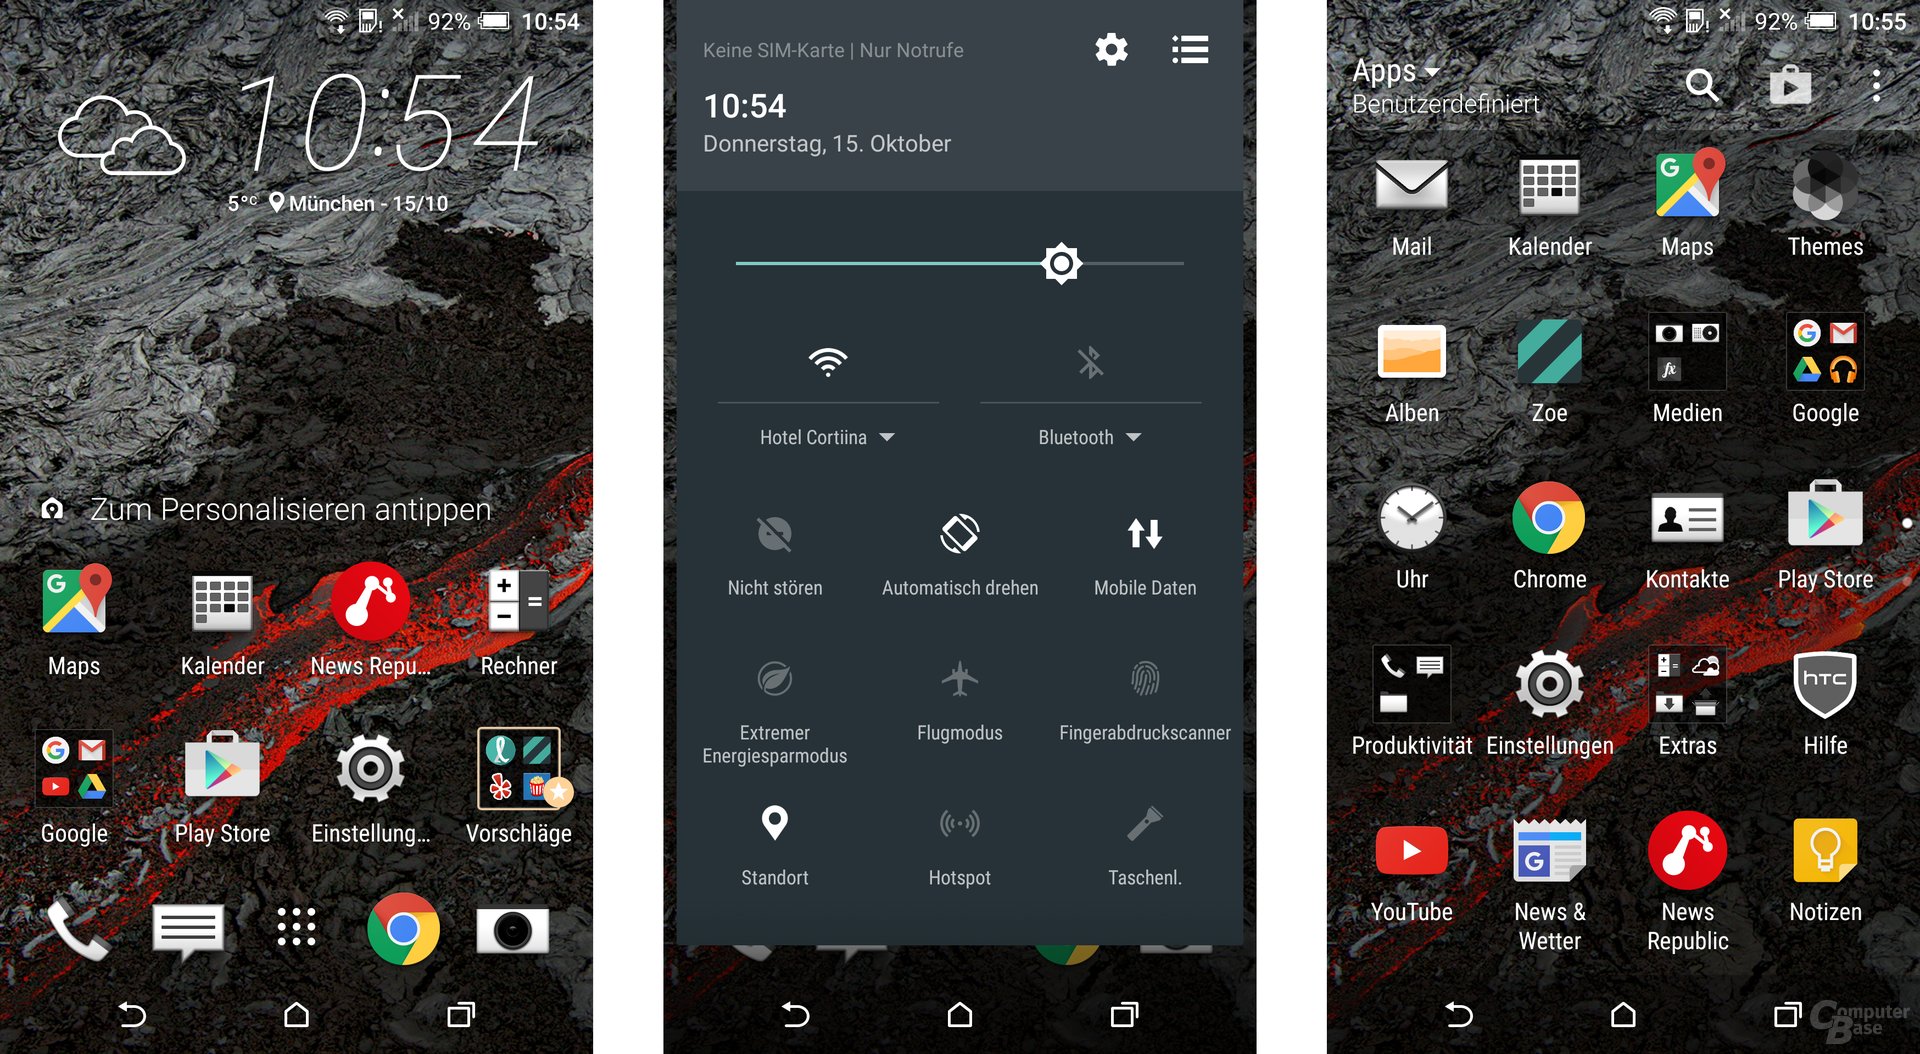 Android 6.0 Marshmallow mit Sense 7 auf dem HTC One A9